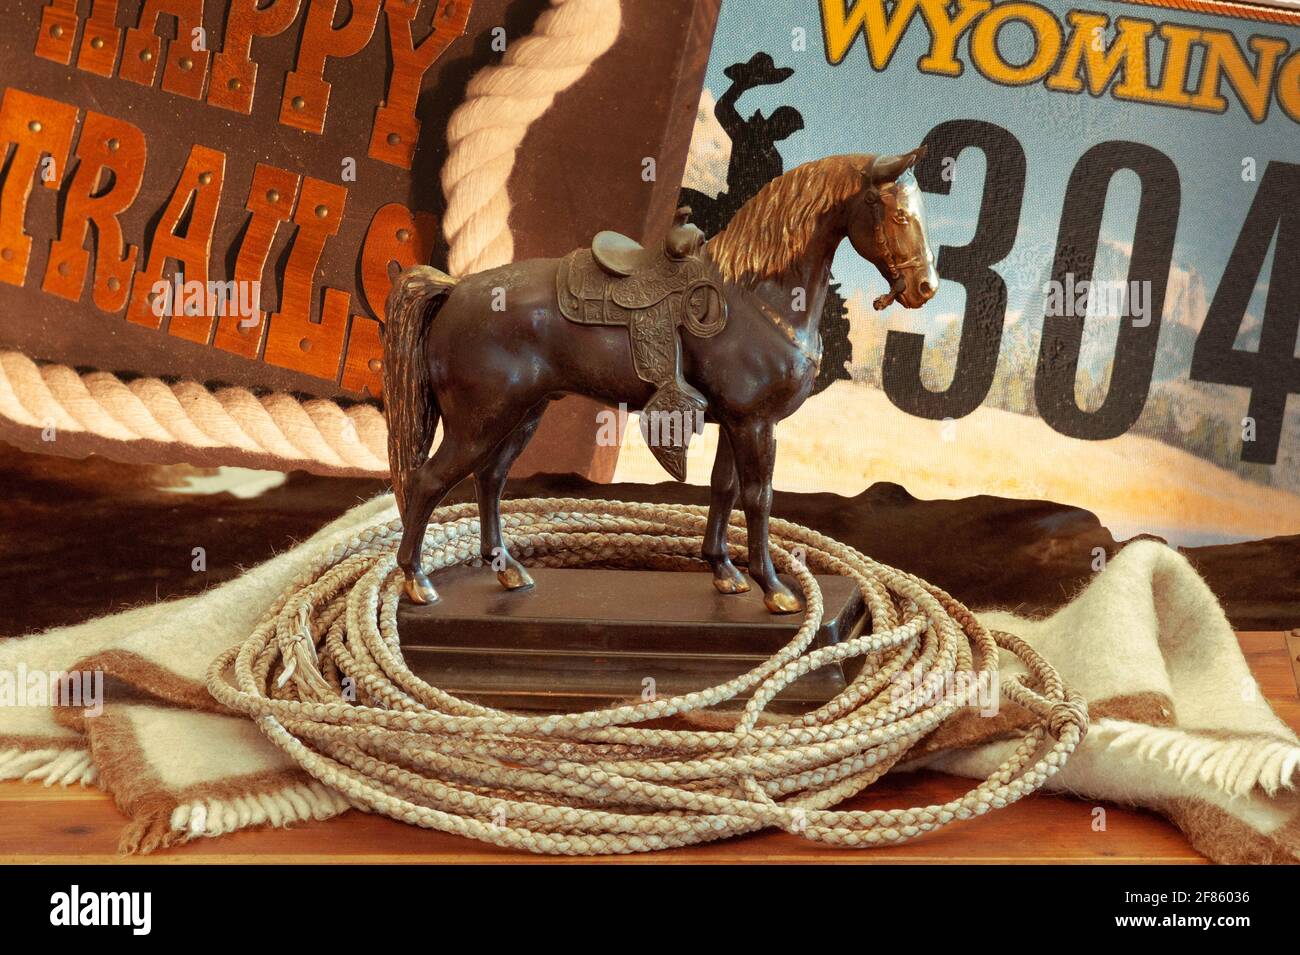 Benvenuto nel Wyoming con il vecchio cavallo saddled, il cavaliere cowboy, la corda, i sentieri e la targa. Vista in primo piano della statua e signs.Composite foto. Foto Stock